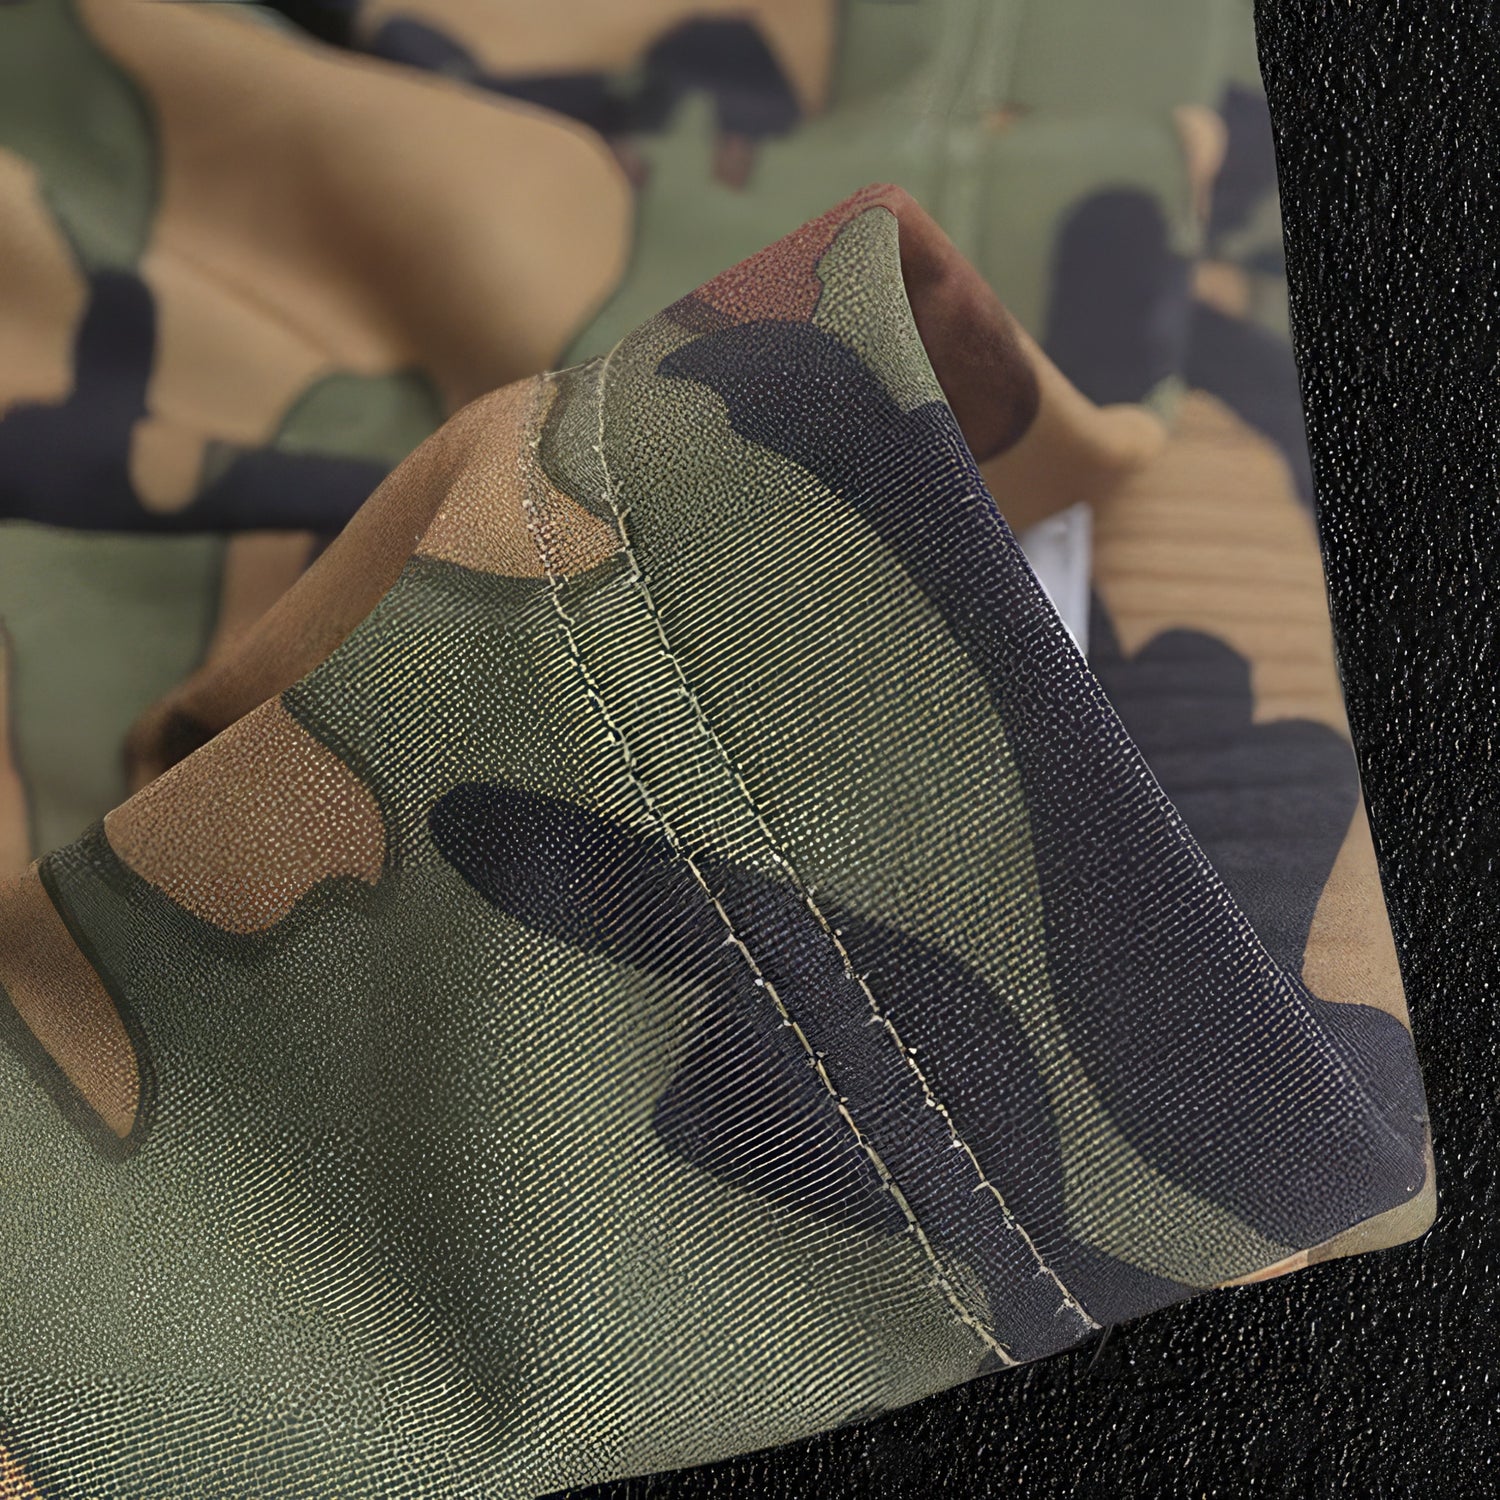 Camouflage Underwear Closeup